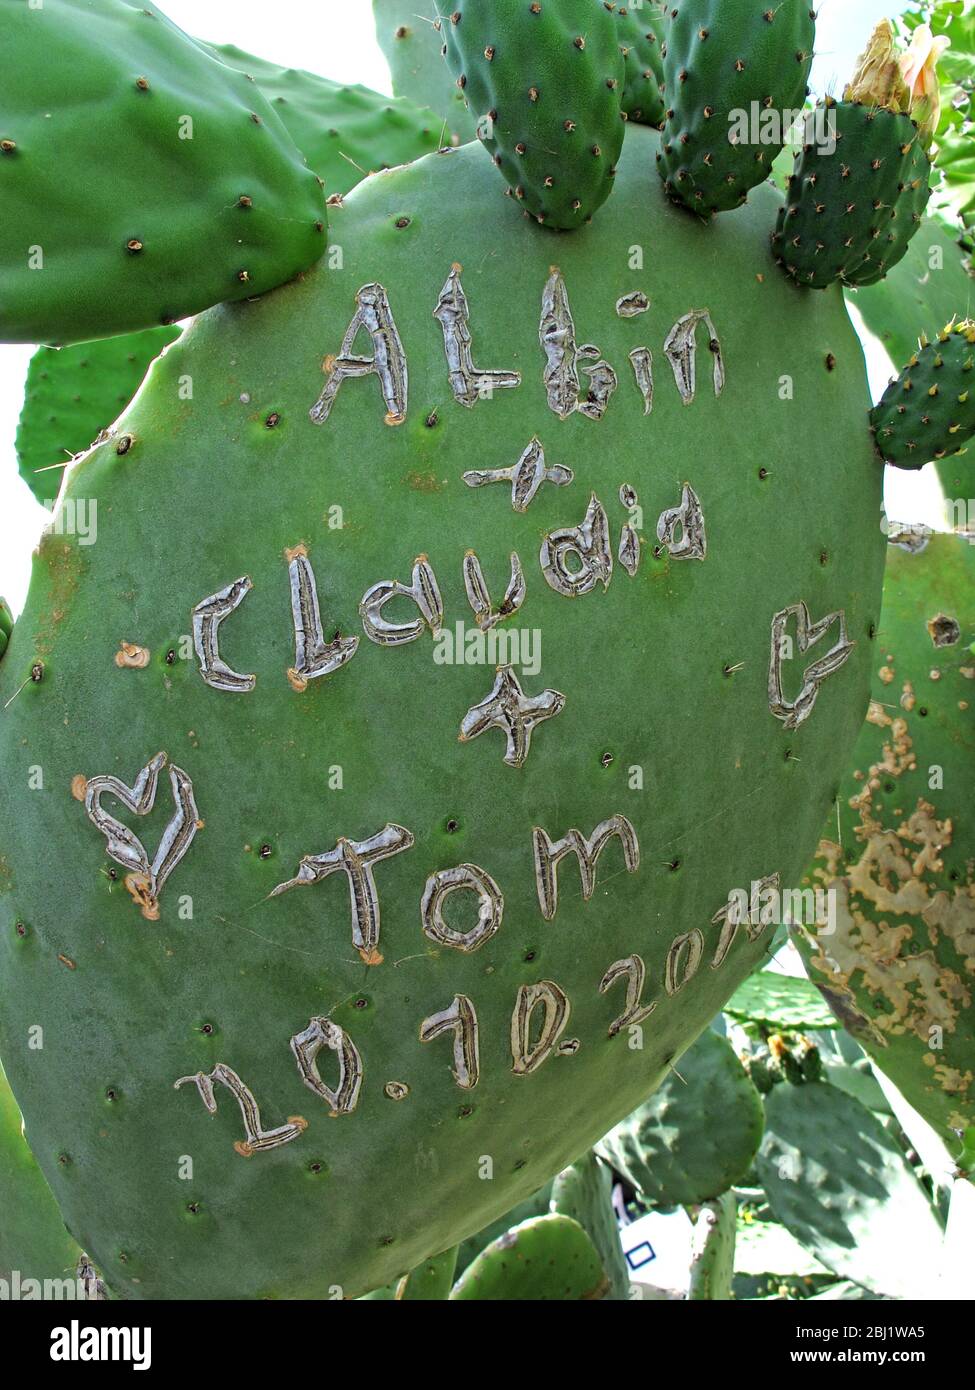 Albin,Claudia,Tom,sculpté,sur cactus,graffiti Banque D'Images